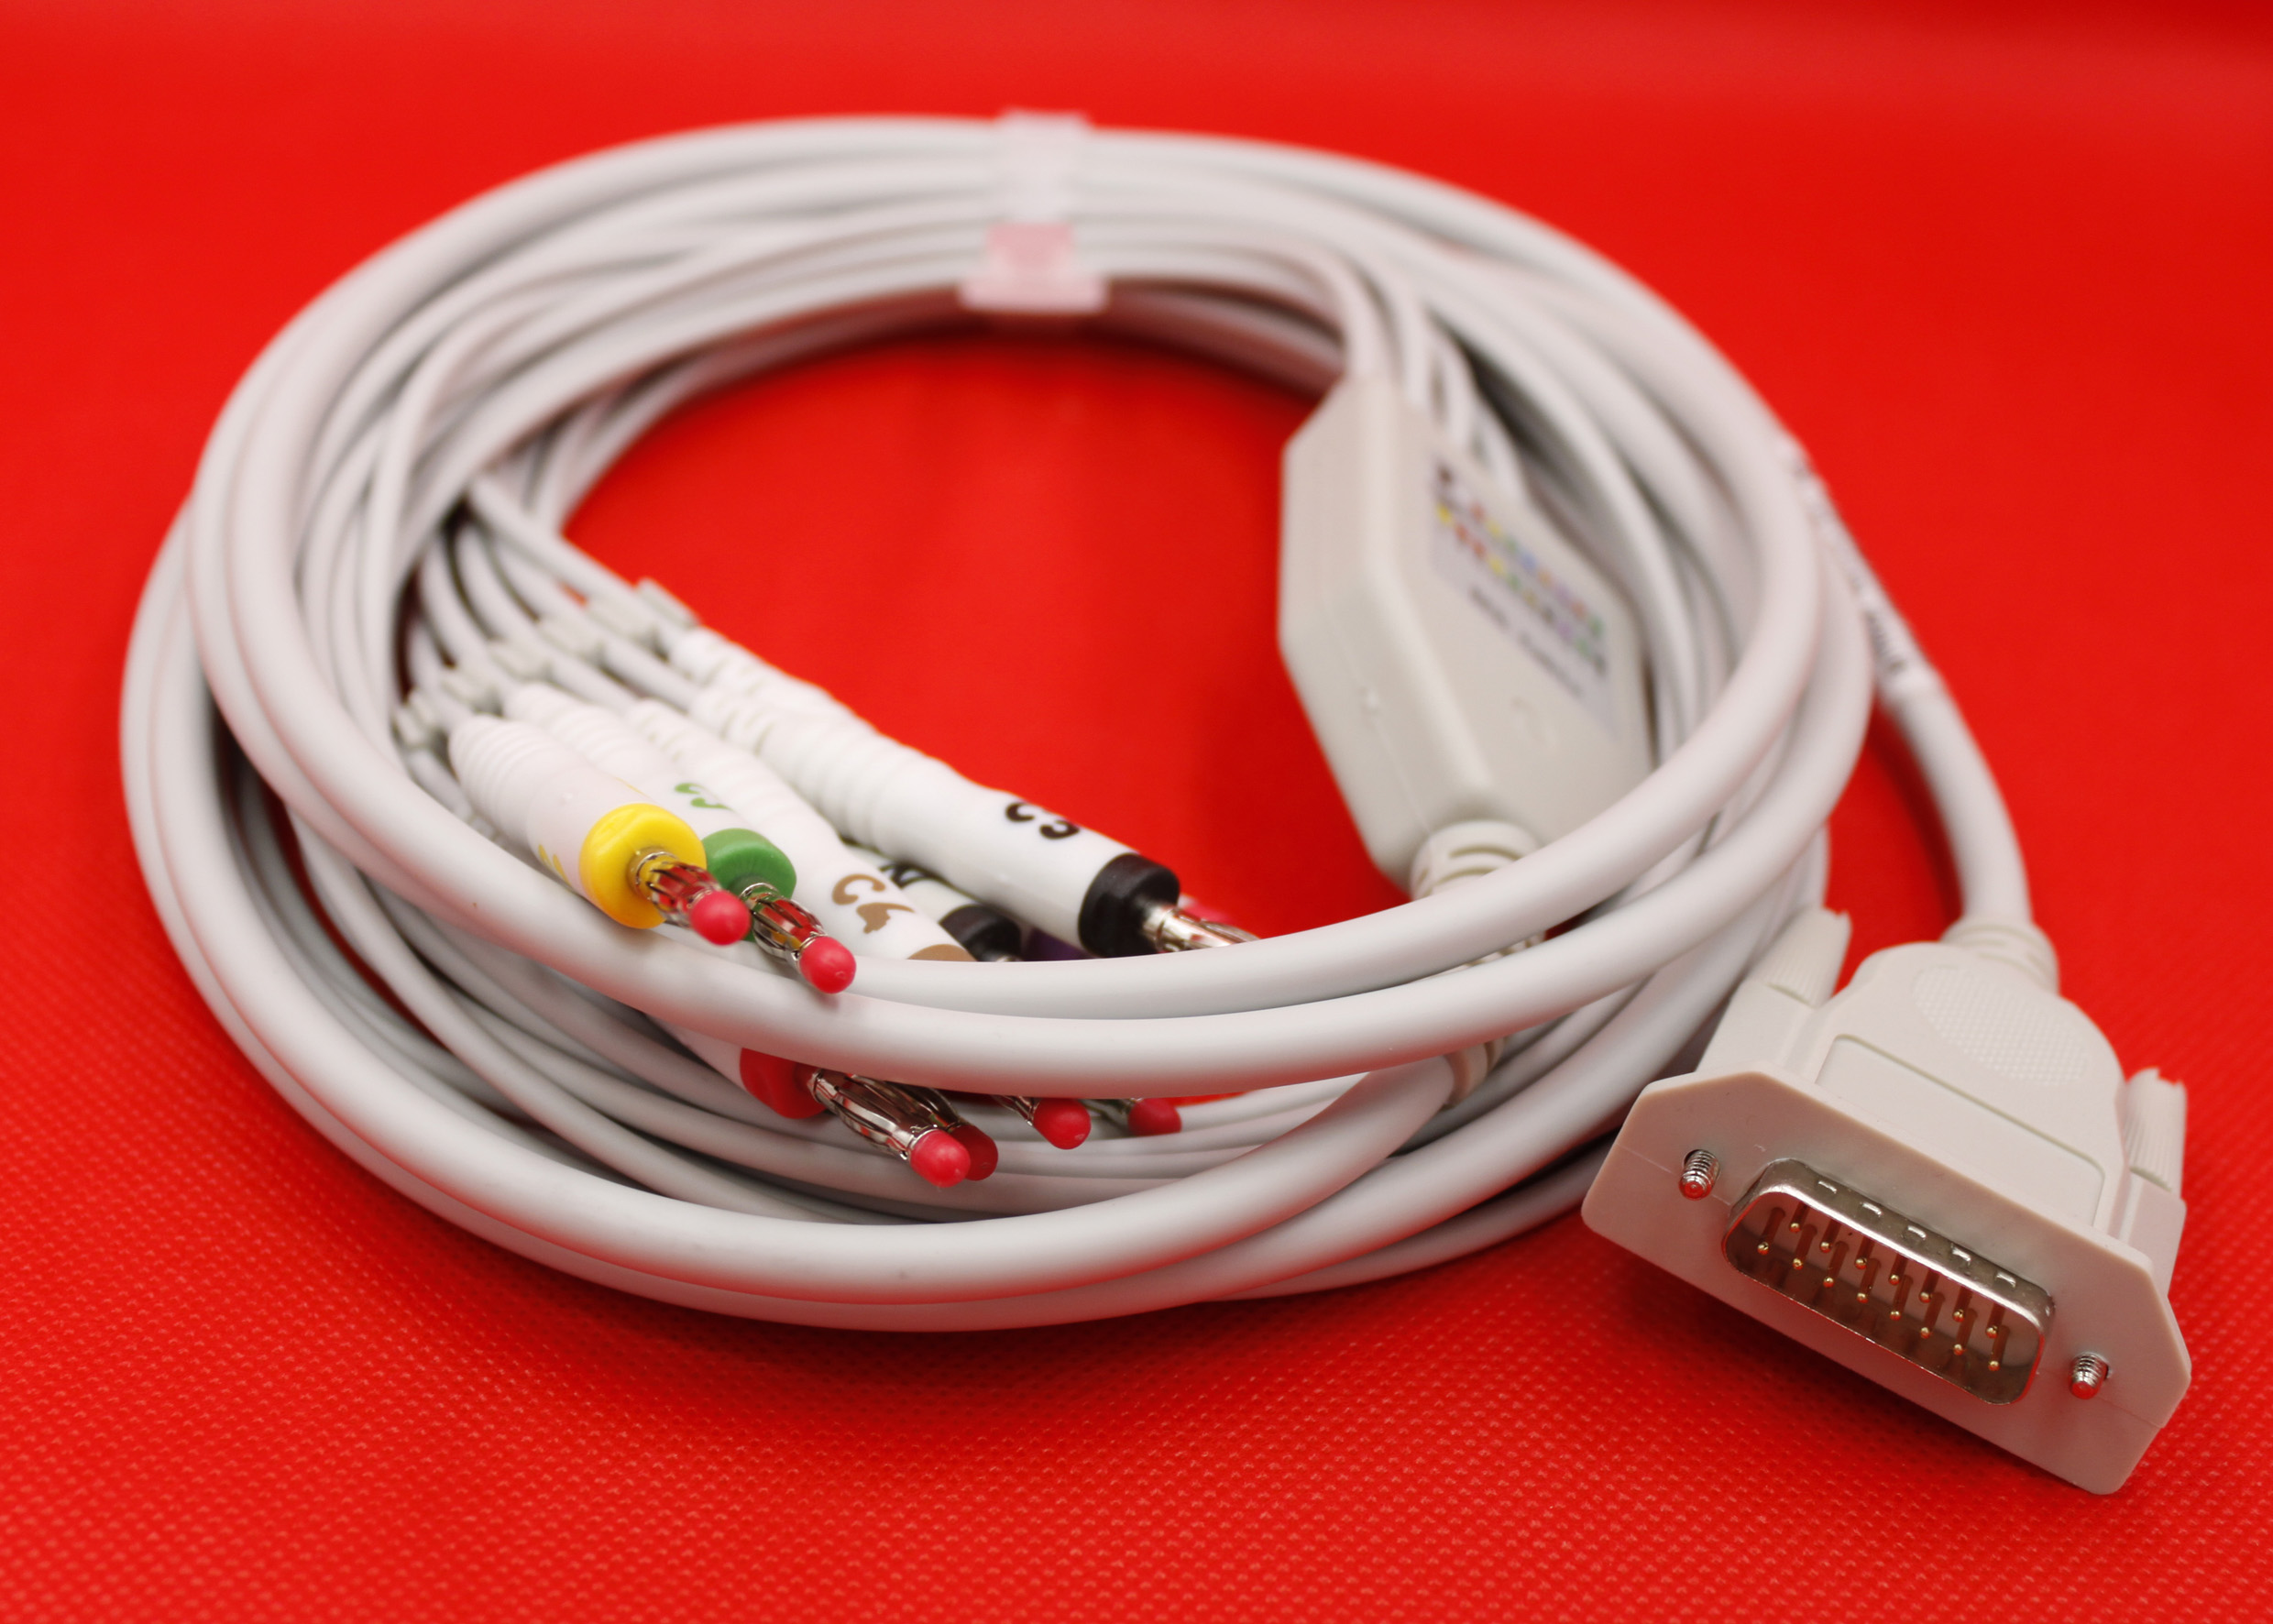 ЭКГ кабель пациента для Heaco EKG80A, 100G, ECG300G, ECG600G, ECG1201, штекер banana 4мм, IEC